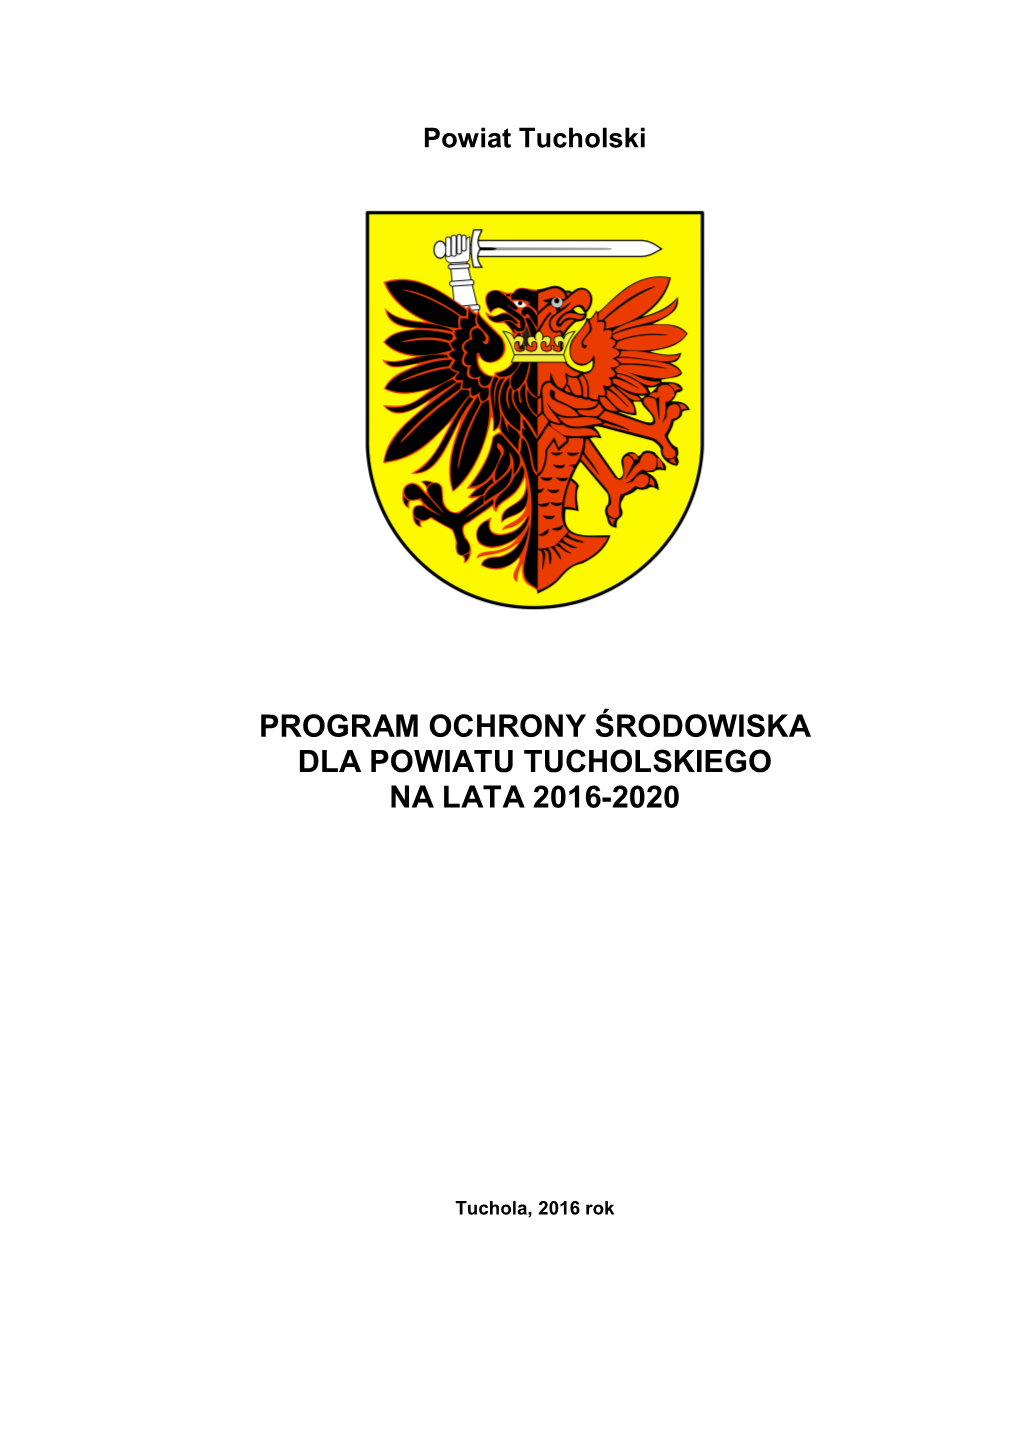 Program Ochrony Środowiska Dla Powiatu Tucholskiego Na Lata 2016-2020